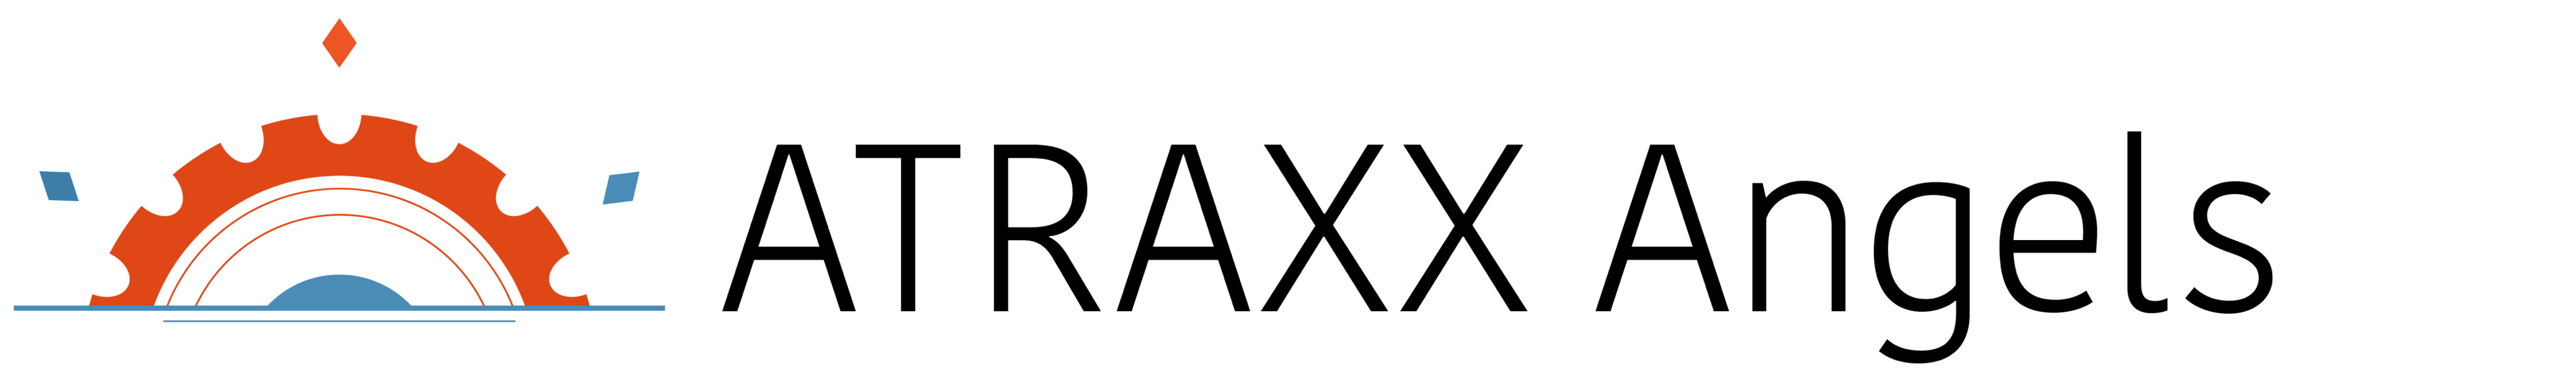 ATRAXX Angels tagline